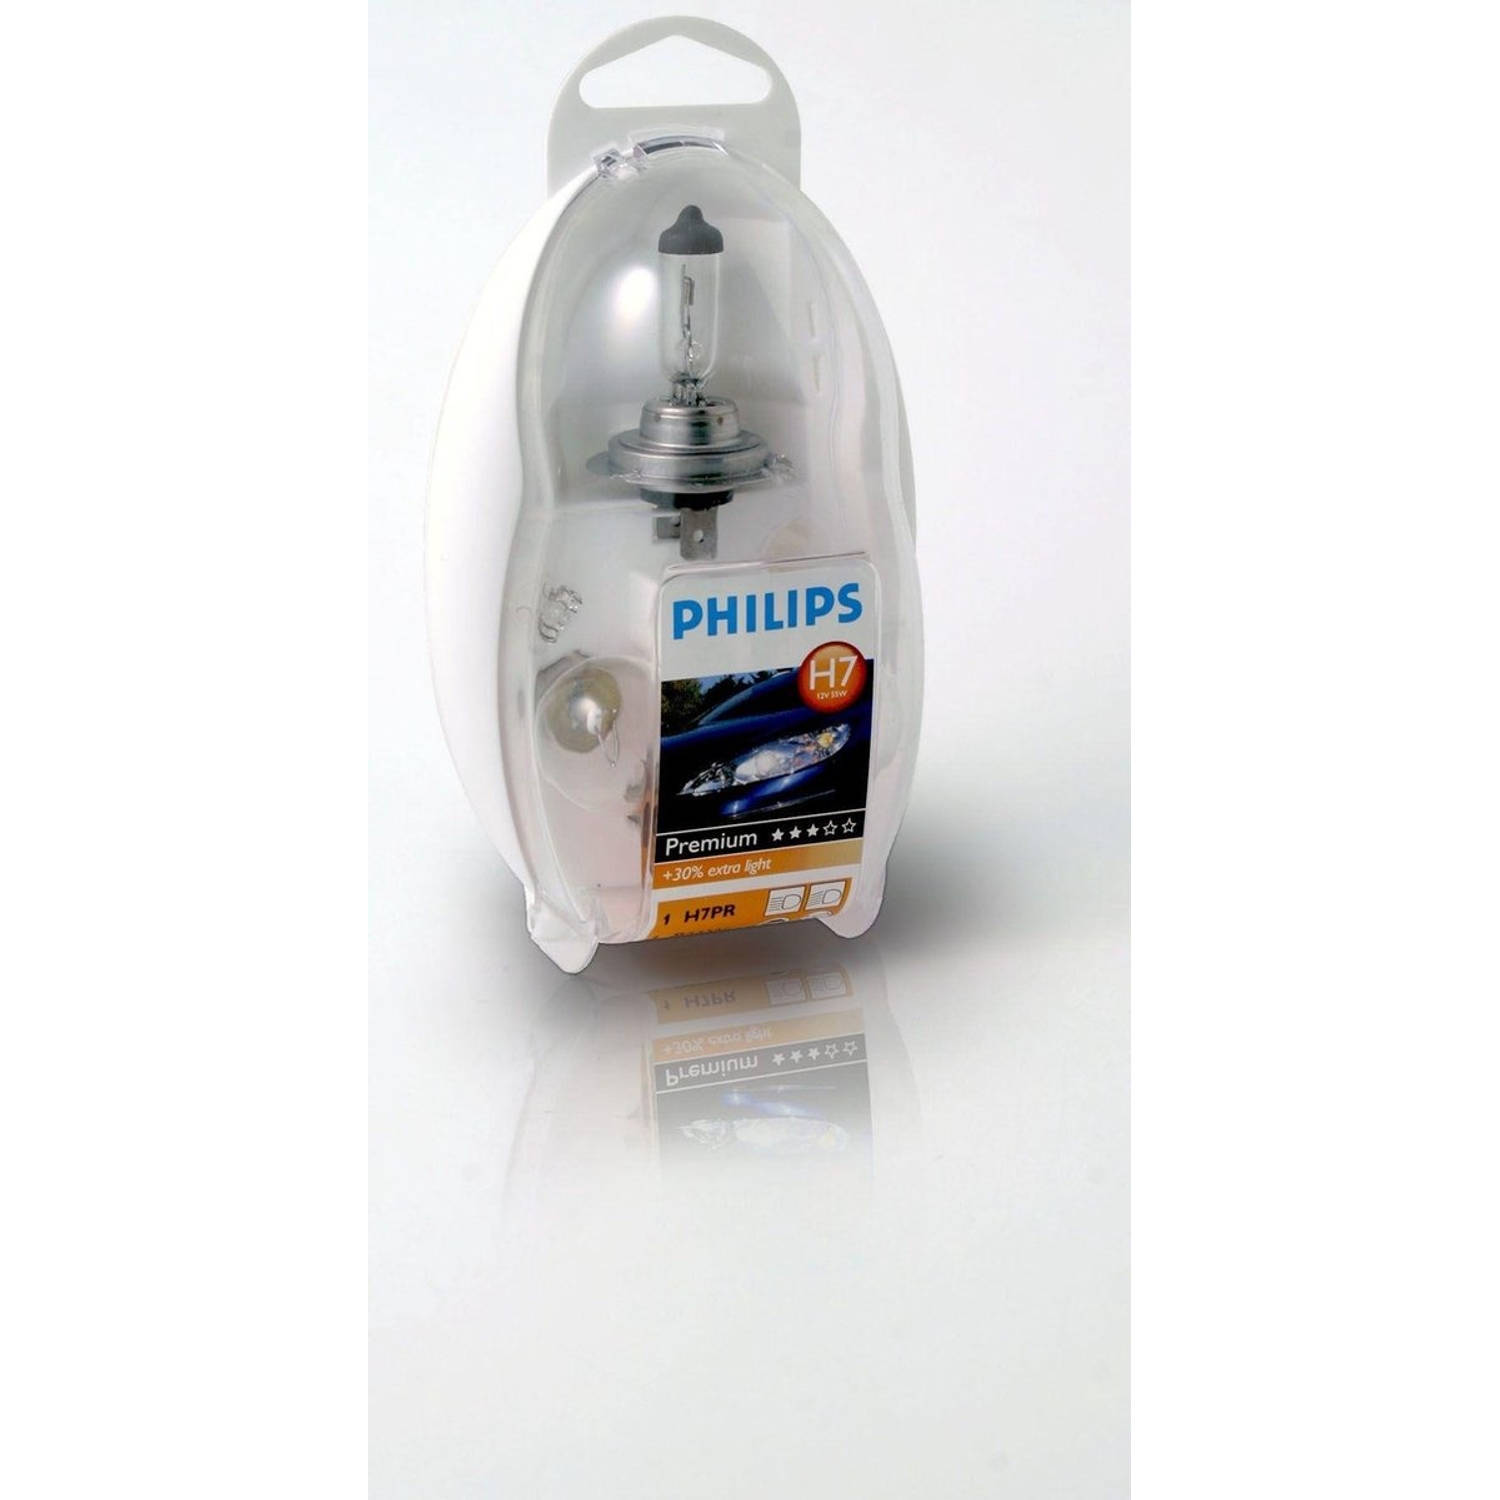 Philips Reservelampenset Premium Vision Easykit H7 55474ekkm